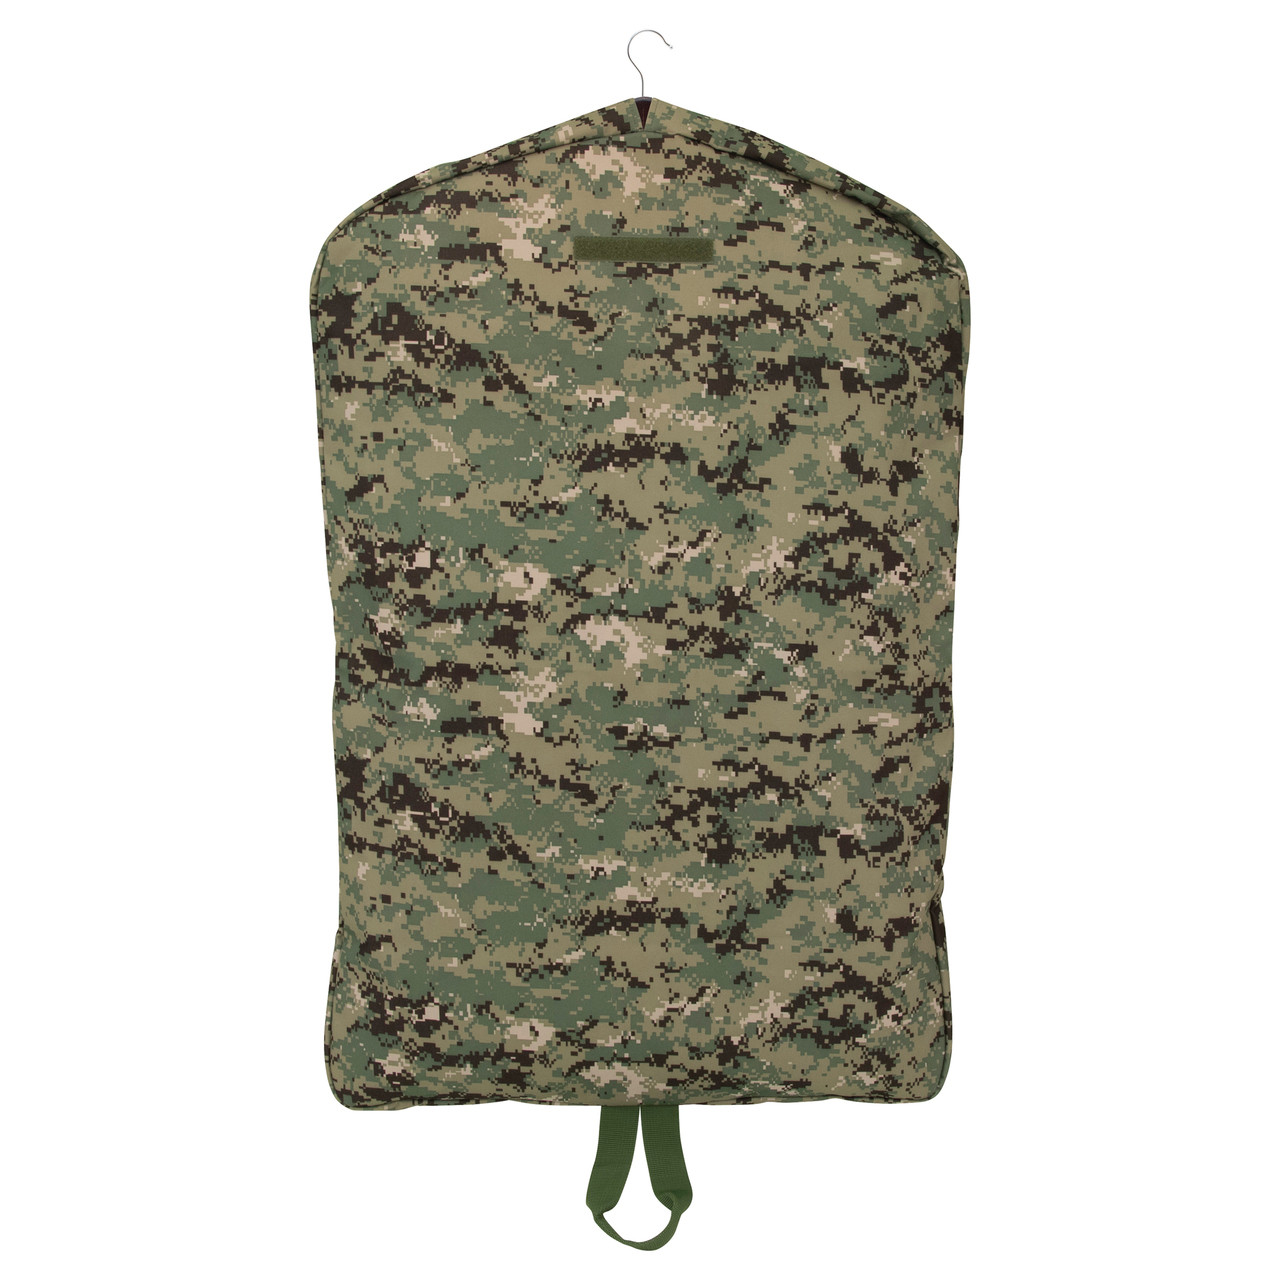 NWU Type III Garment Cover | Military Luggage